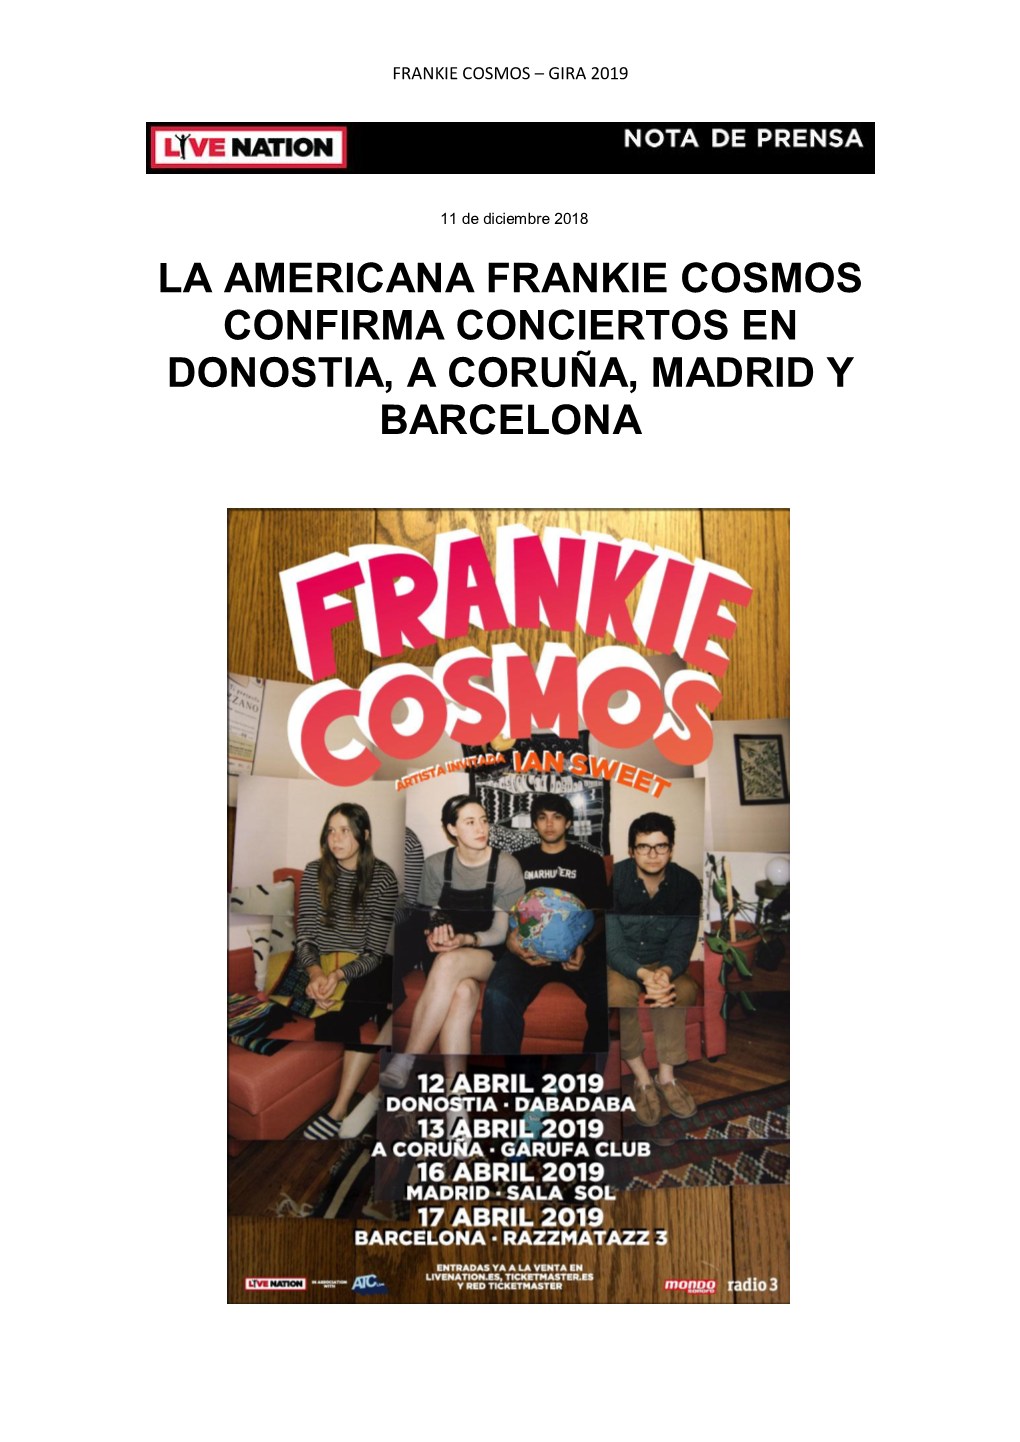 La Americana Frankie Cosmos Confirma Conciertos En Donostia, a Coruña, Madrid Y